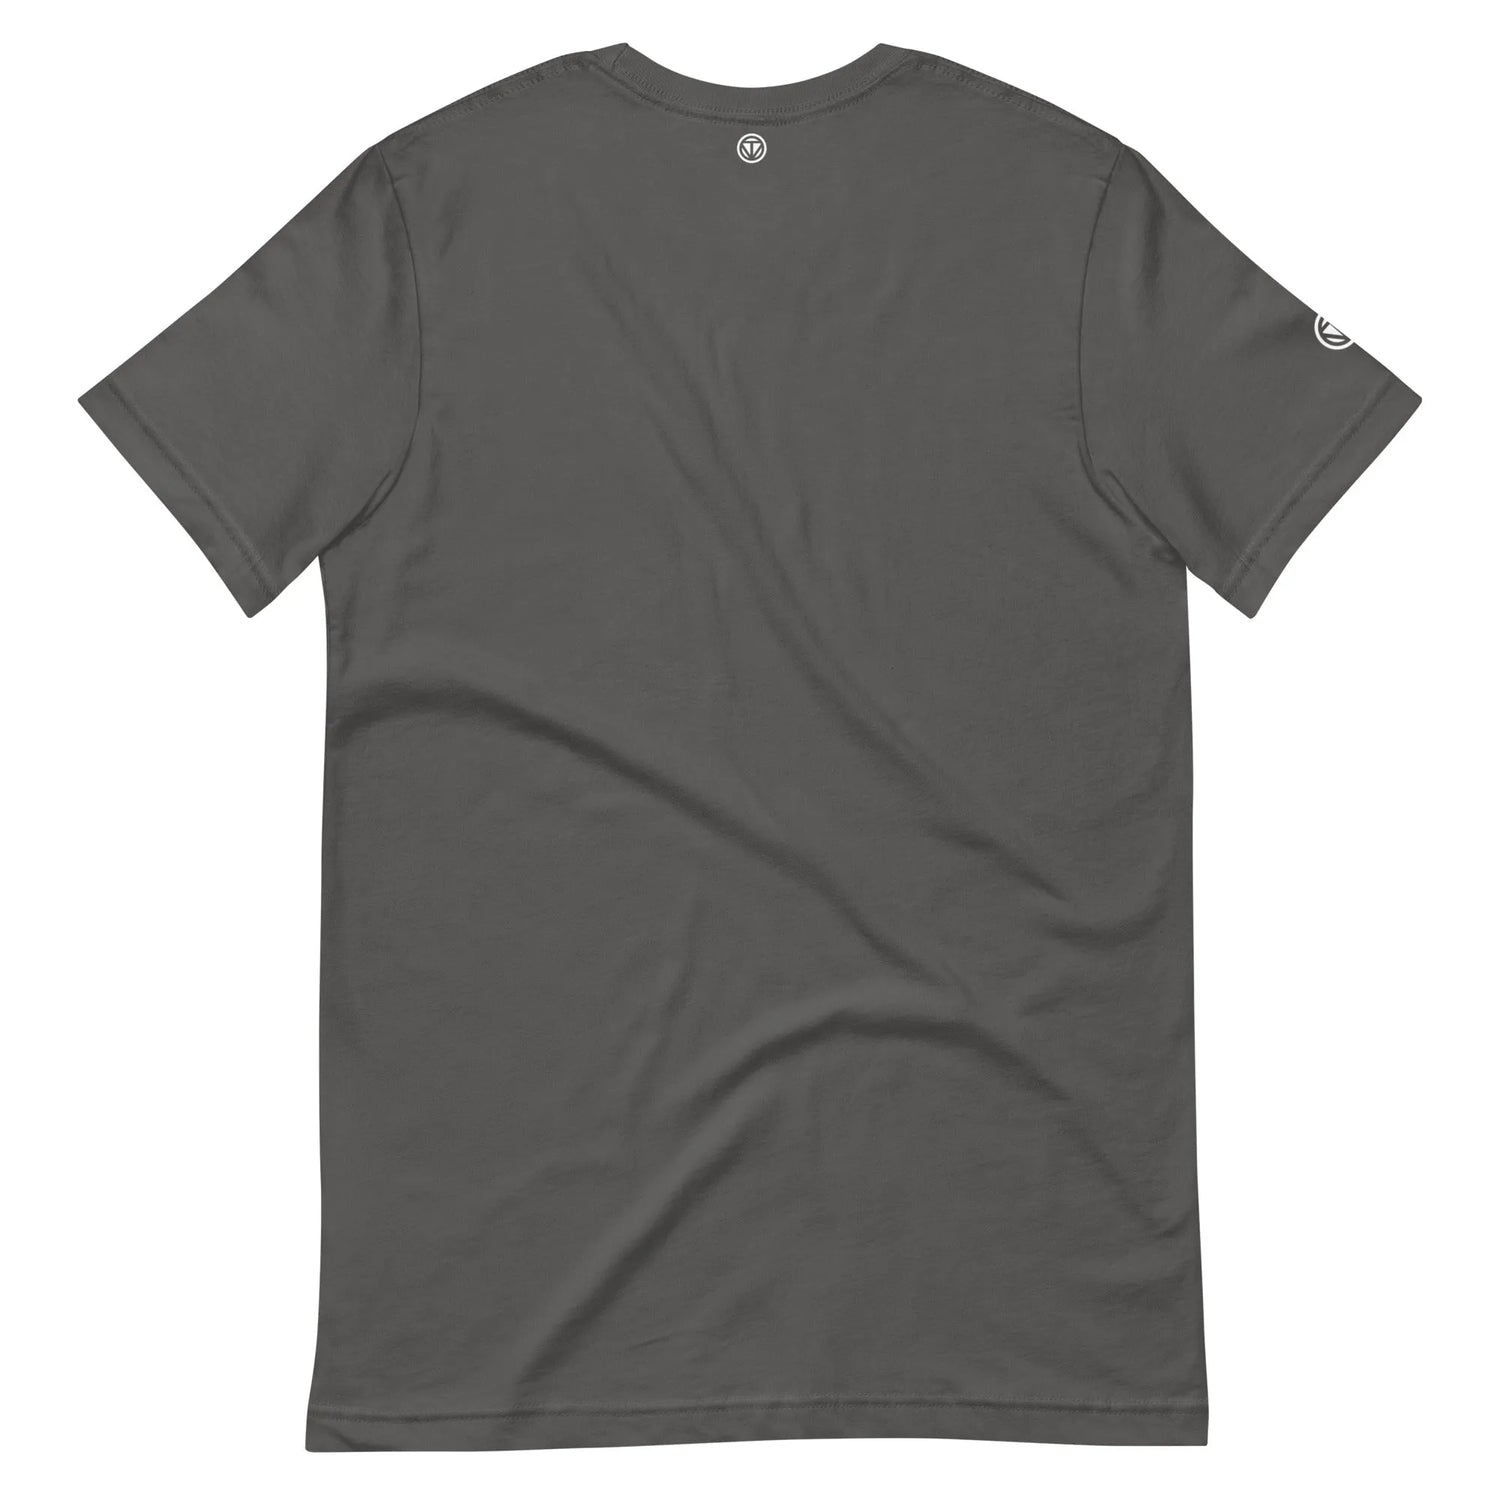 T-shirt en coton pour homme VIBES  (gris/blanc)